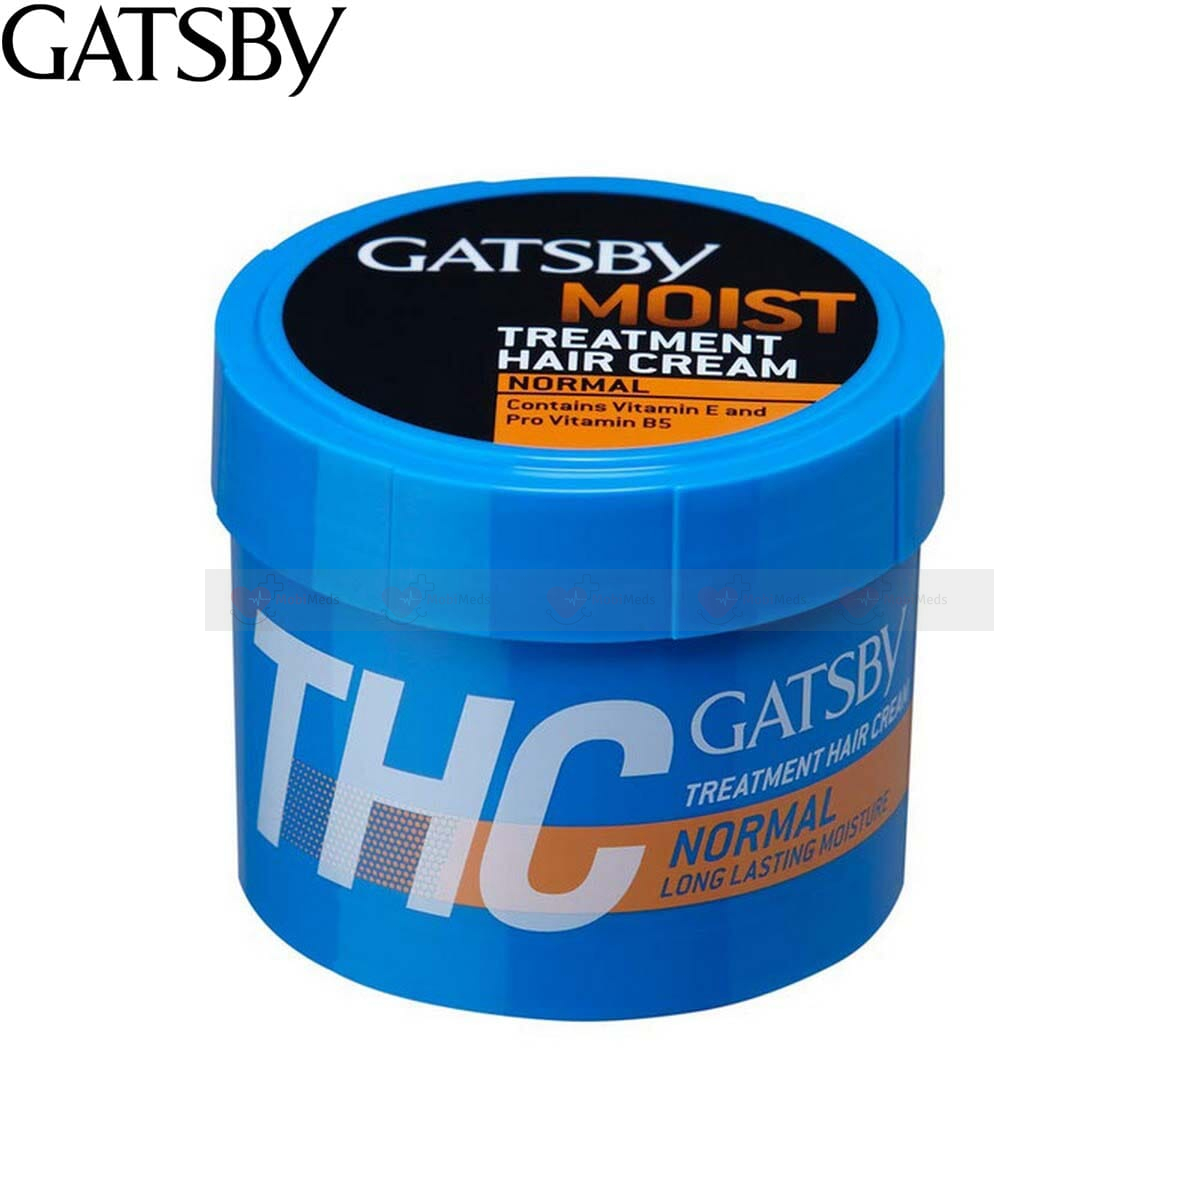 Gatsby Hair Cream 250GM, 125gm- NORMAL